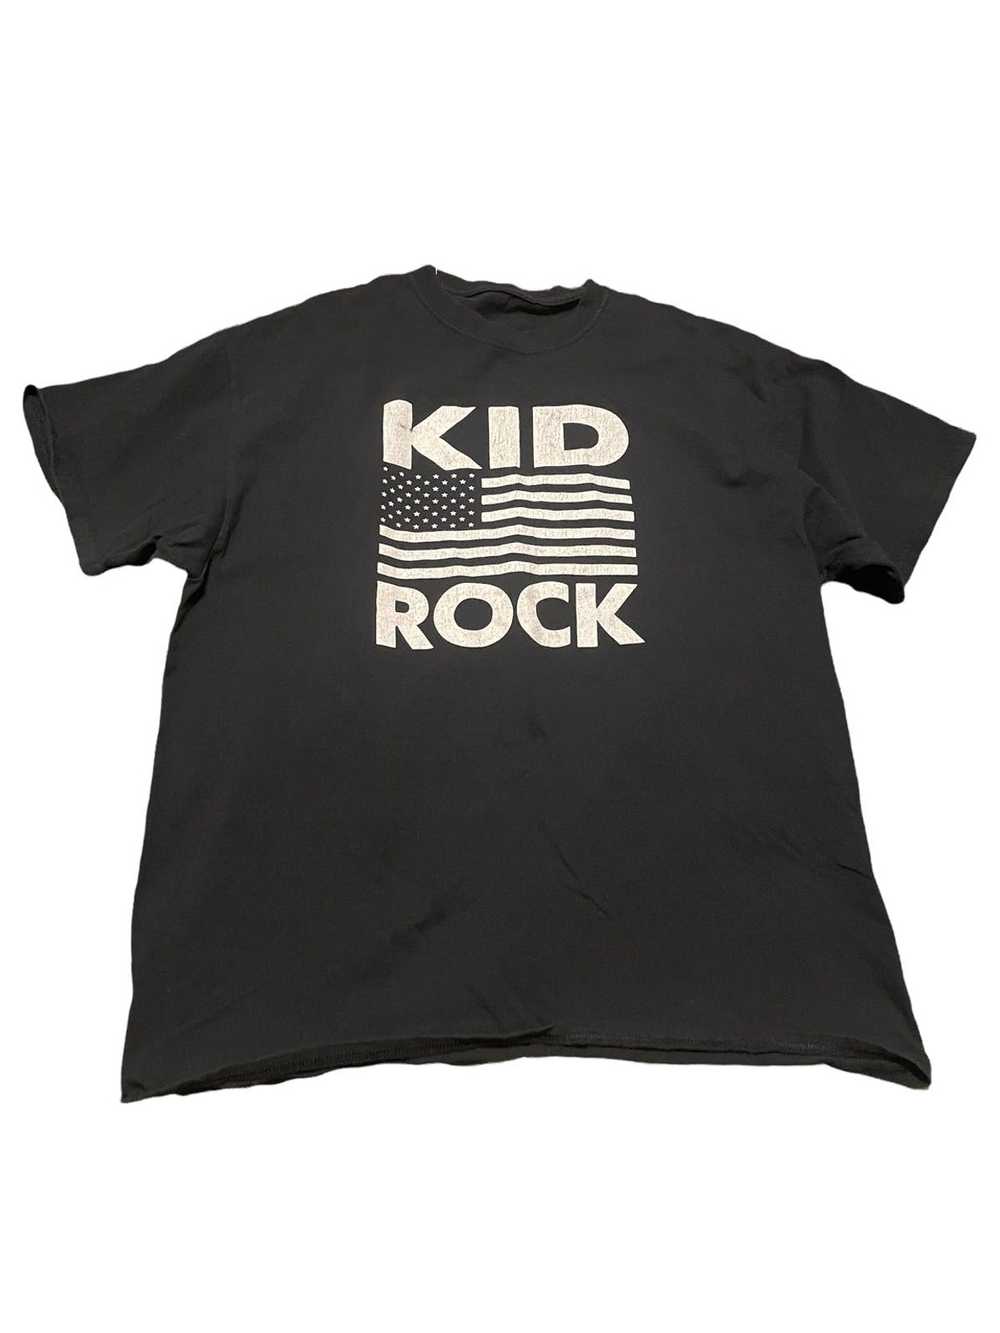 Rock T Shirt × Streetwear × Vintage Vintage kid r… - image 4